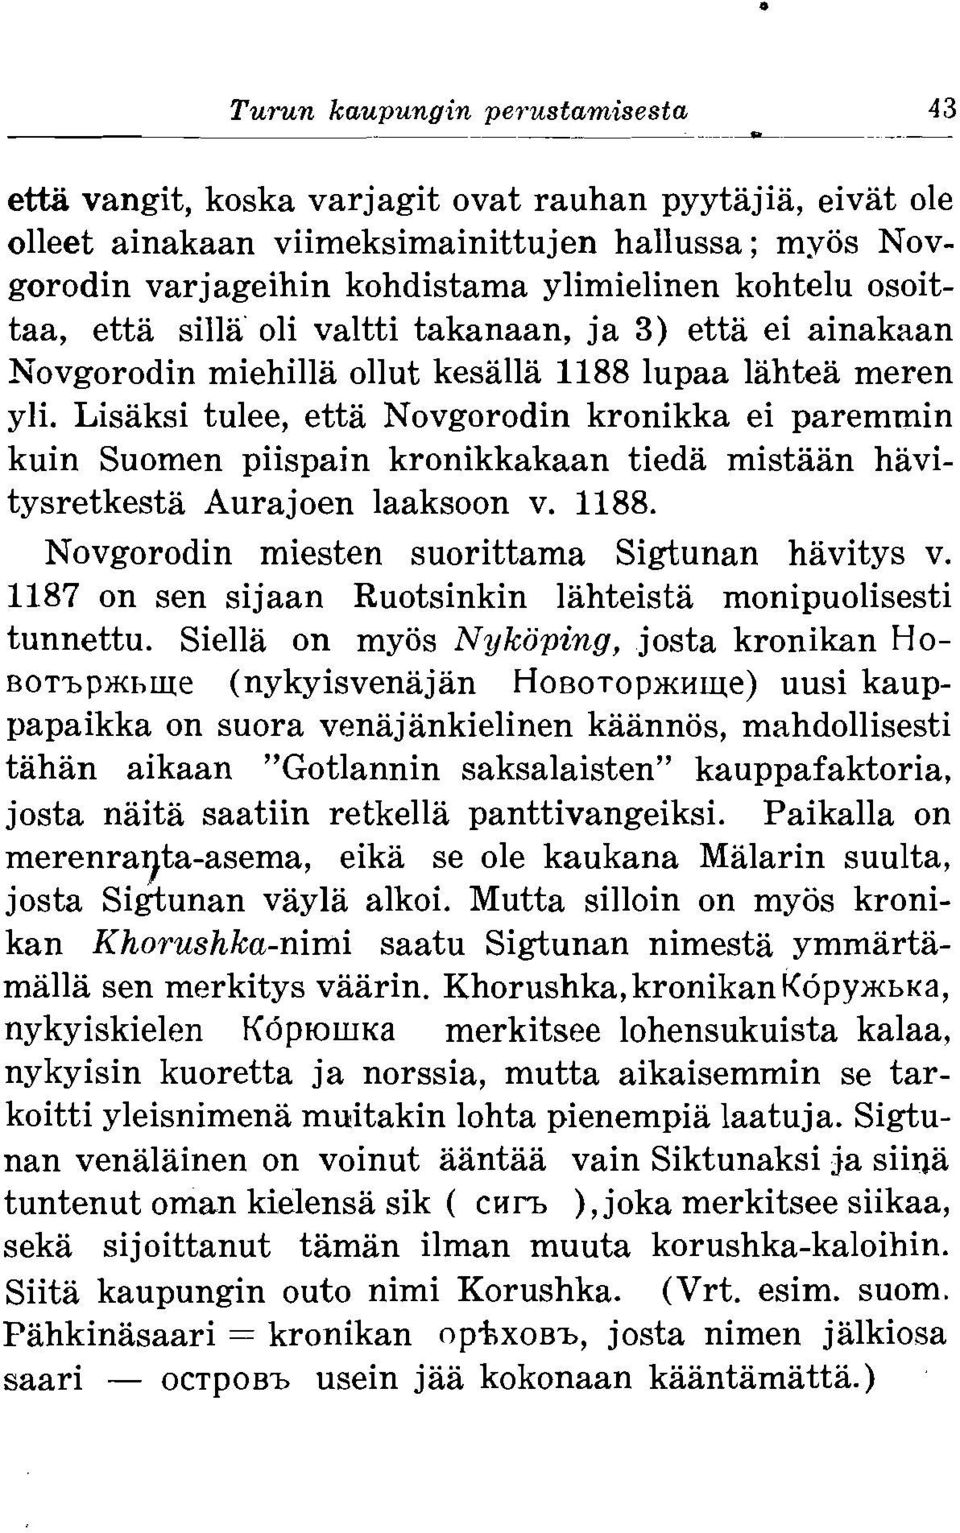 Lisaksi tulee, etta Novgorodin kronikka ei paremmin kuin Suomen piispain kronikkakaan tieda mistaan havitysretkesta Aurajoen laaksoon v. 1188. Novgorodin miesten suorittama Sigtunan havitys v.